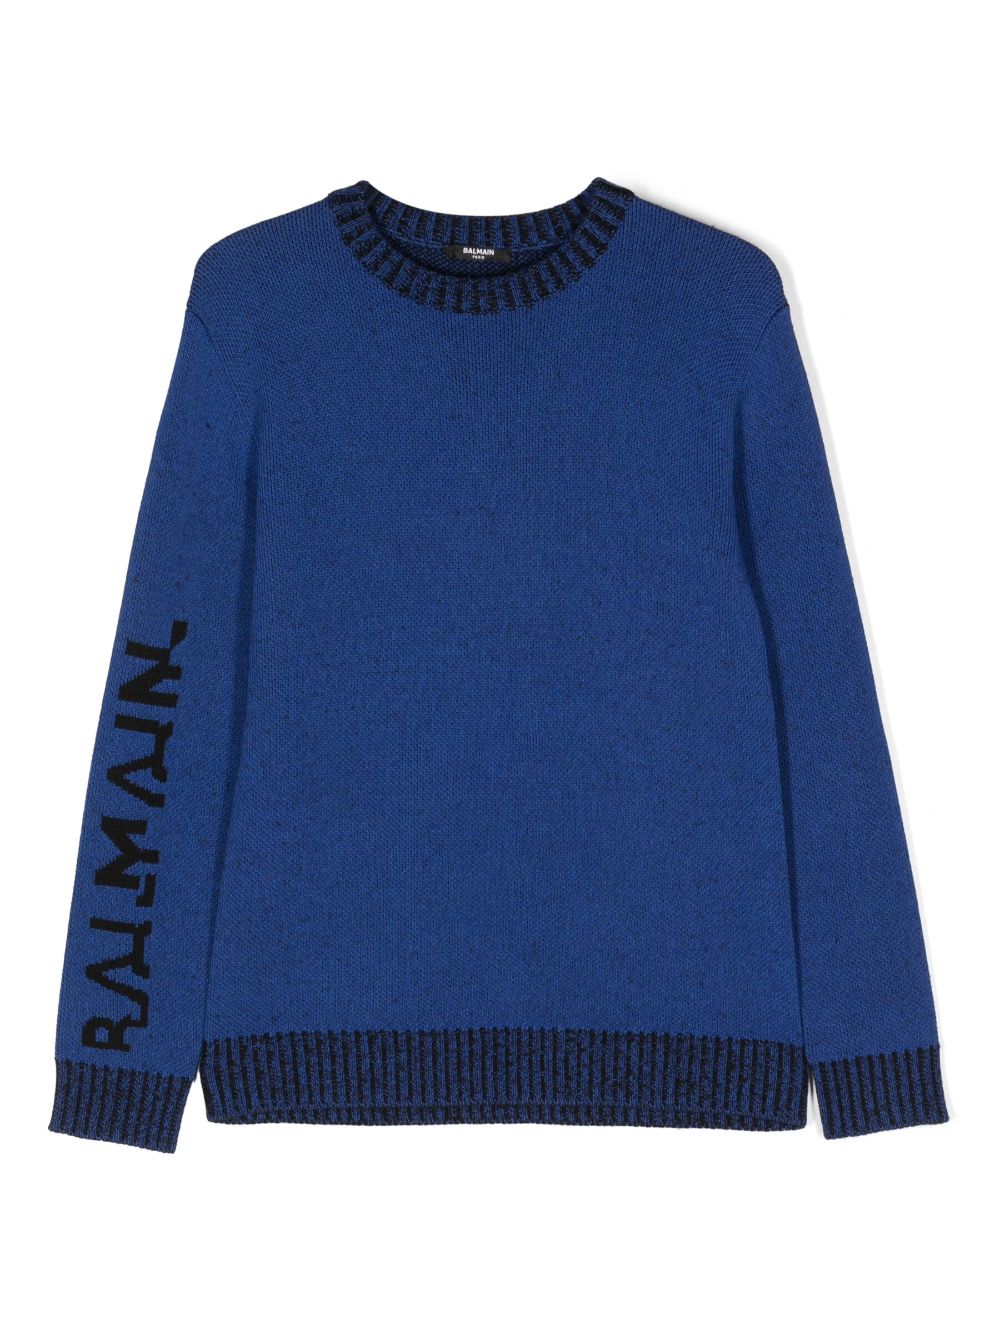 Maglione blu per bambino con logo nero